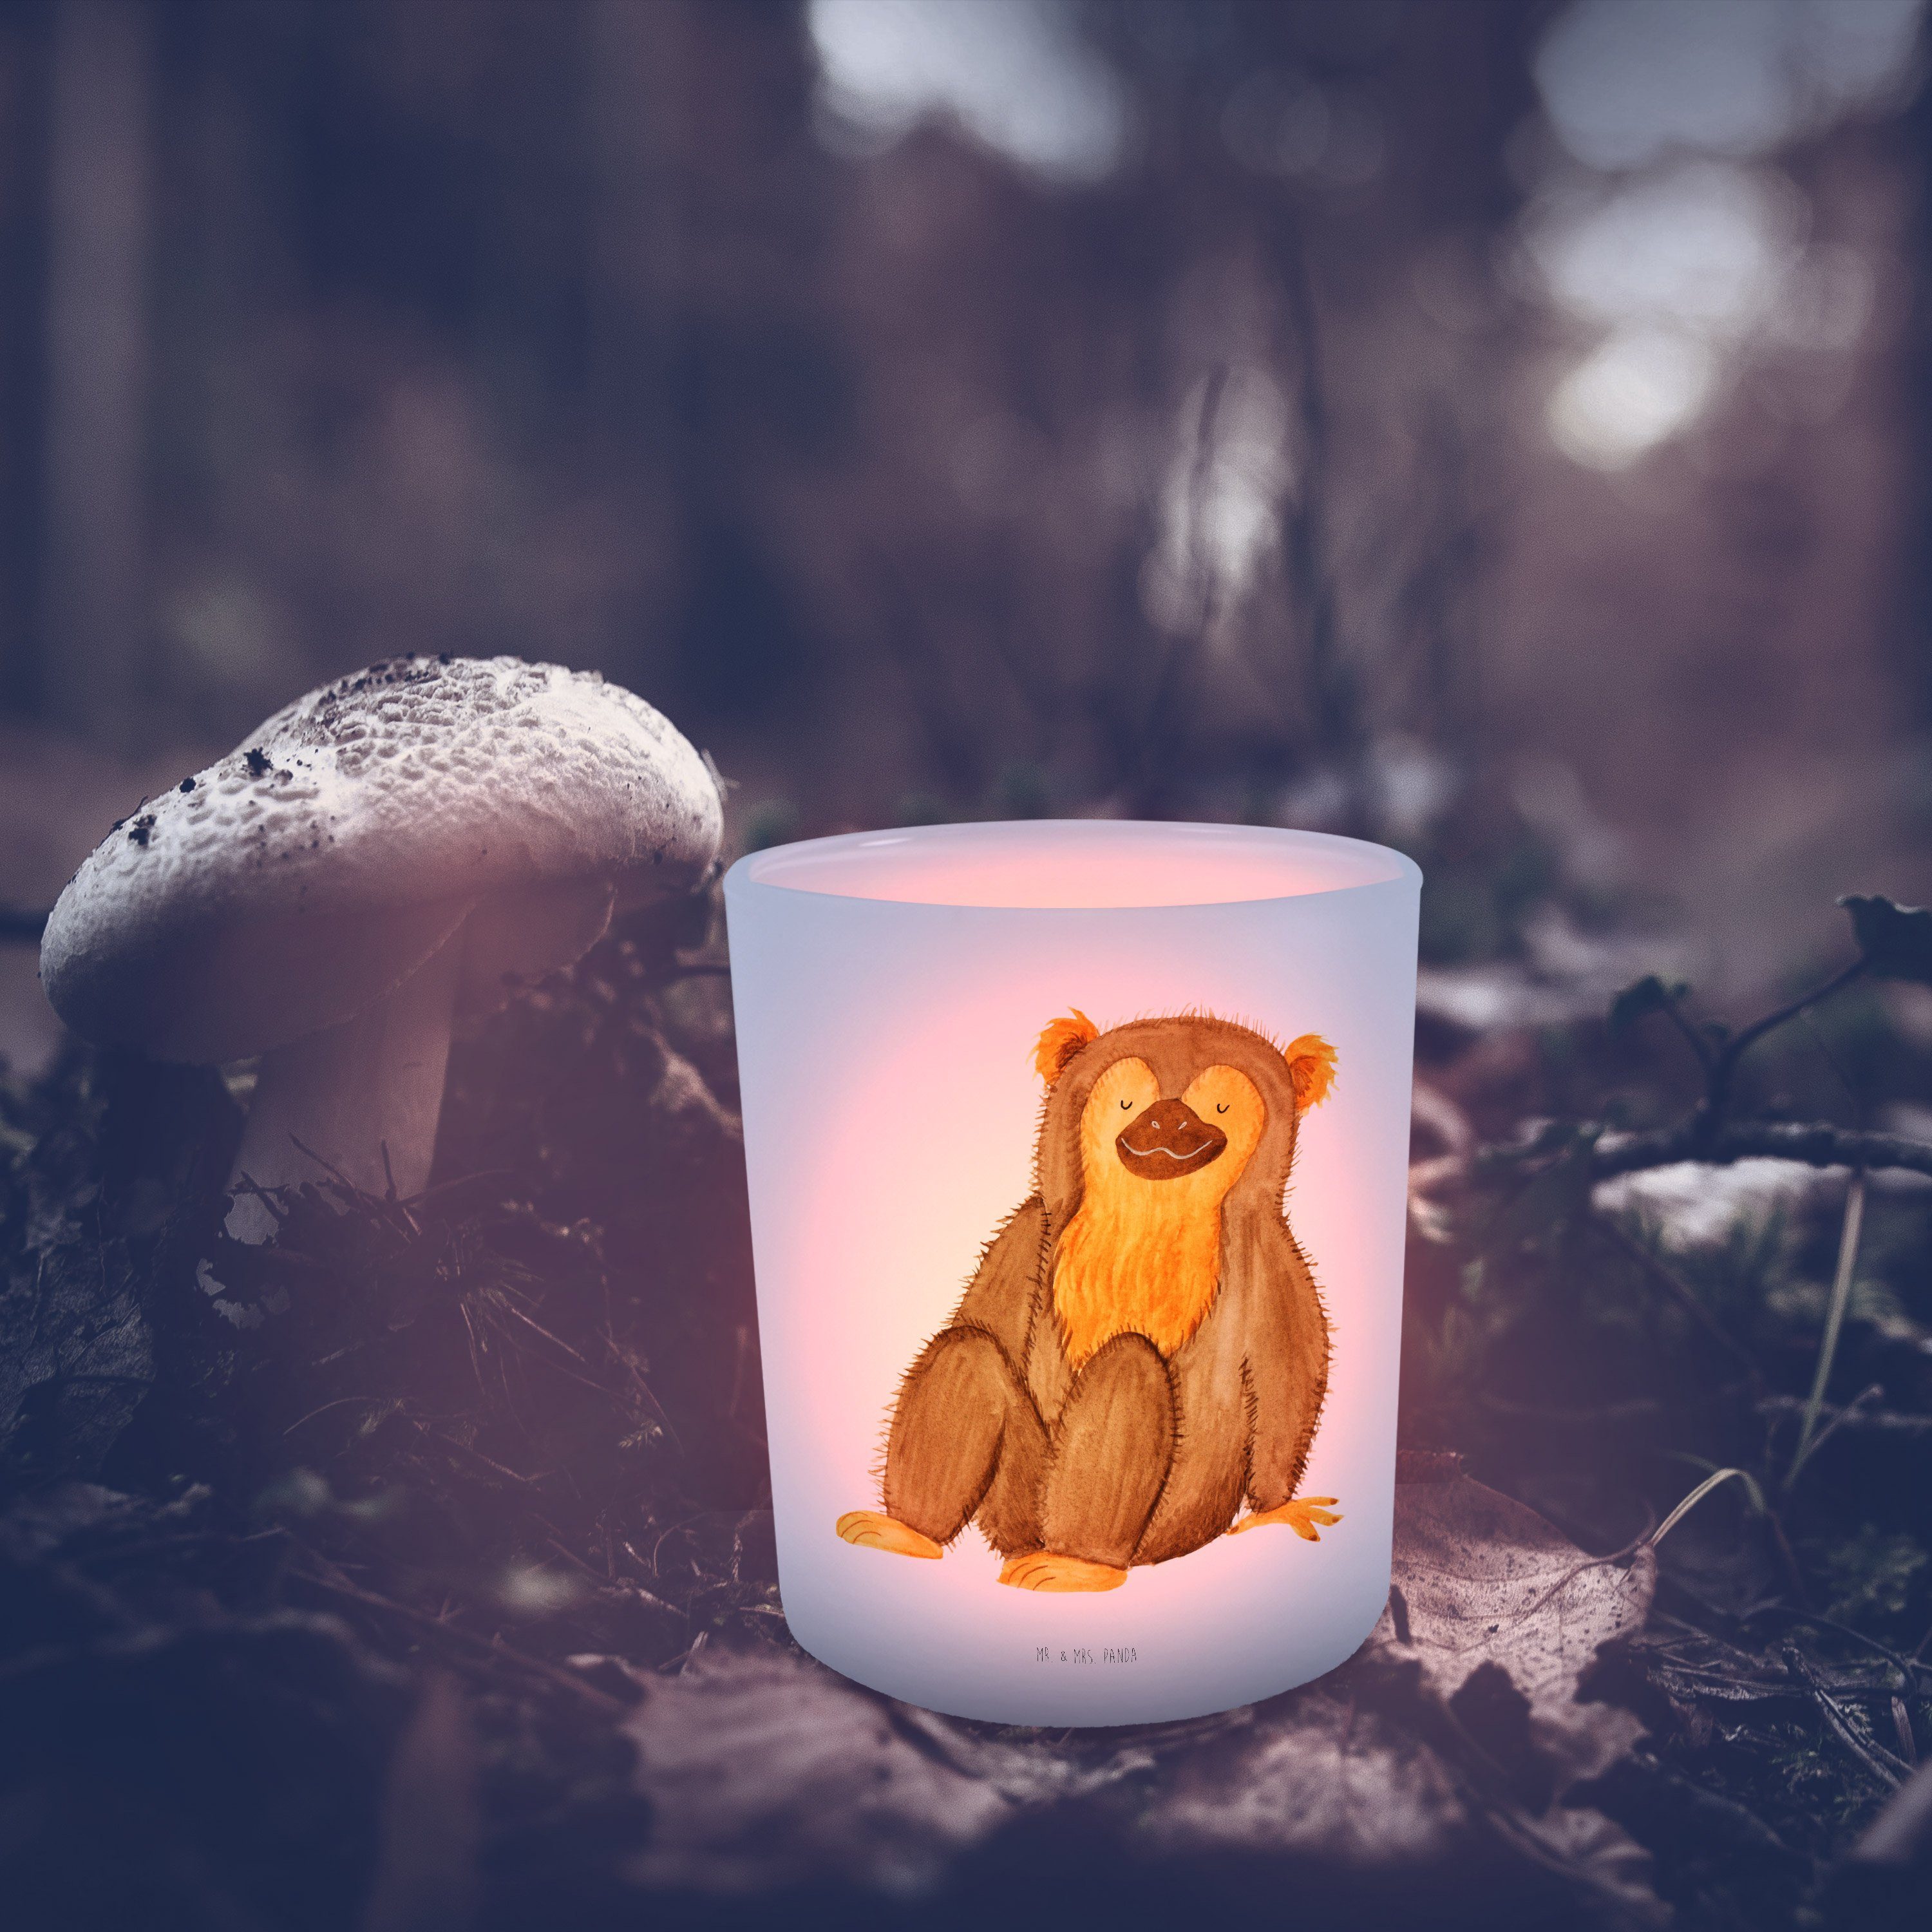 Mr. & Mrs. Panda Windlicht Kerze, Selbstbew St) Windlicht Teelichter, Geschenk, - Transparent - Affe (1